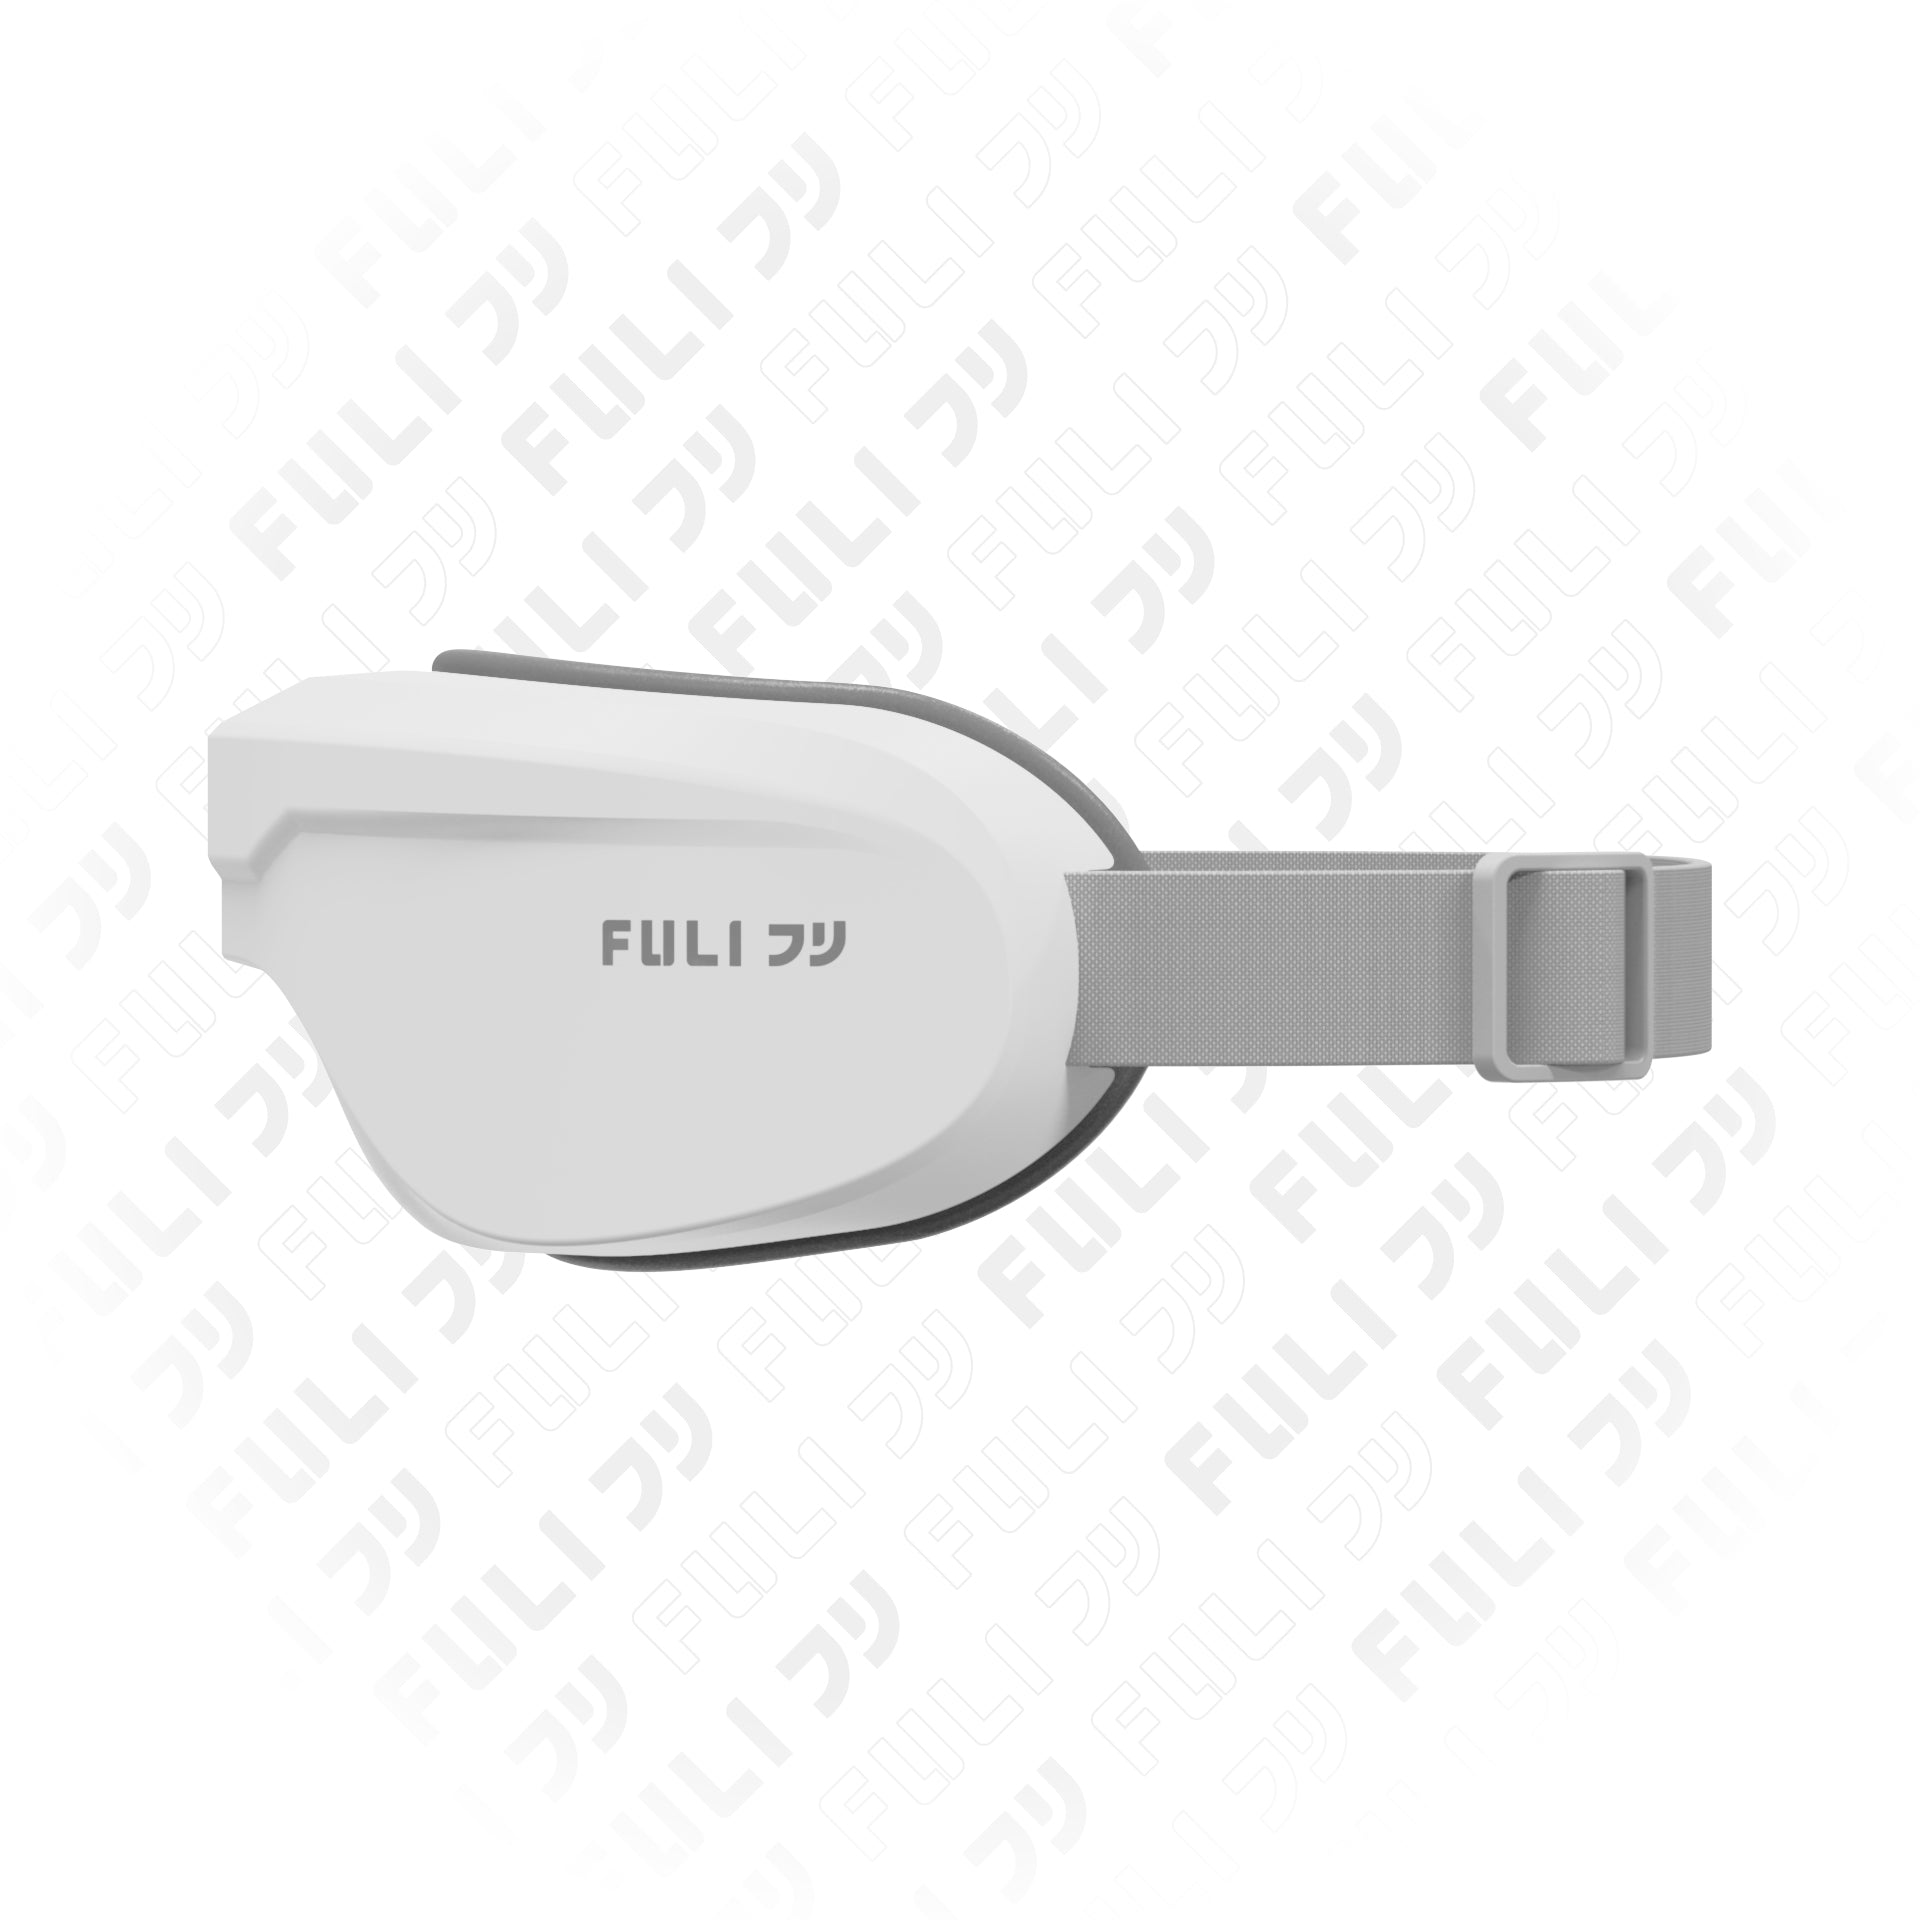 รายการแฉแนะนำ เครื่องนวดตาอัจฉริยะ | FULI Smart Eye Massager